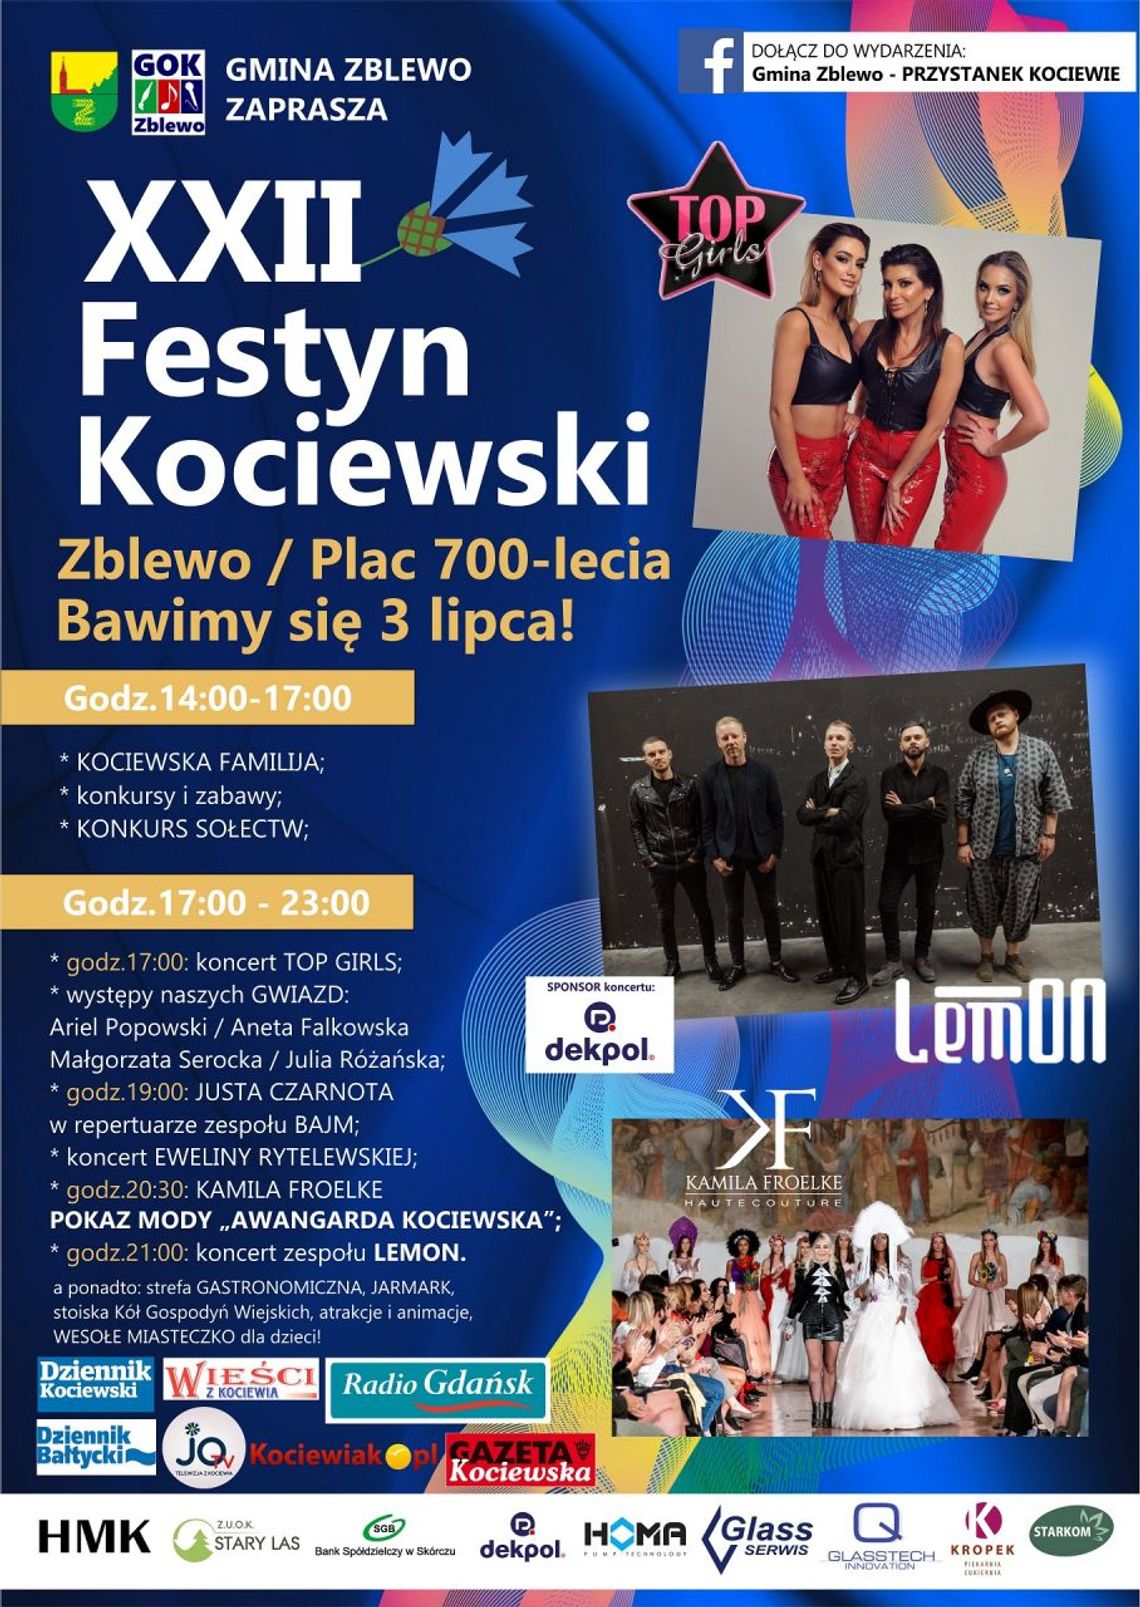 Już w niedzielę XXII Festyn Kociewski w Zblewie! Nie może Was tam zabraknąć! 